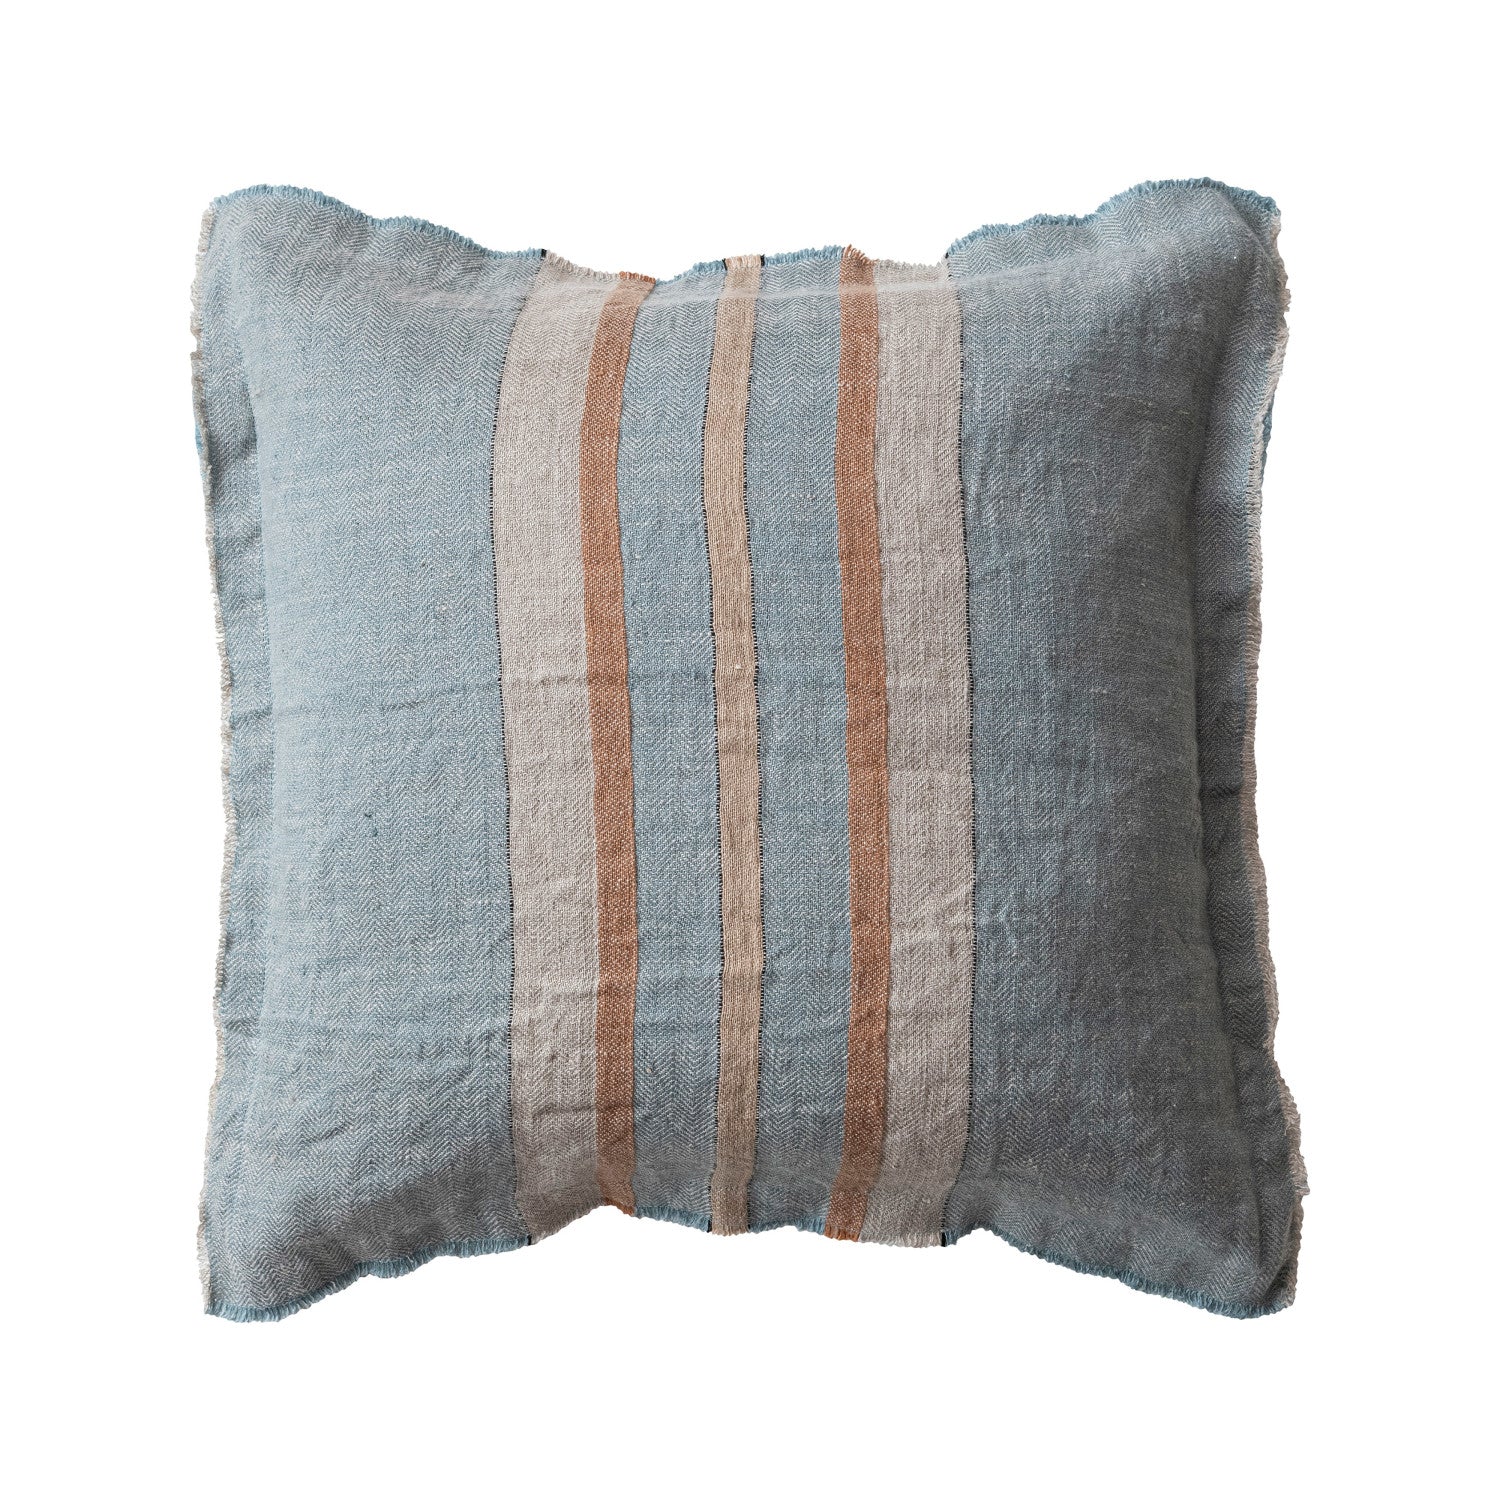 20" Linen Striped Pillow, Blue